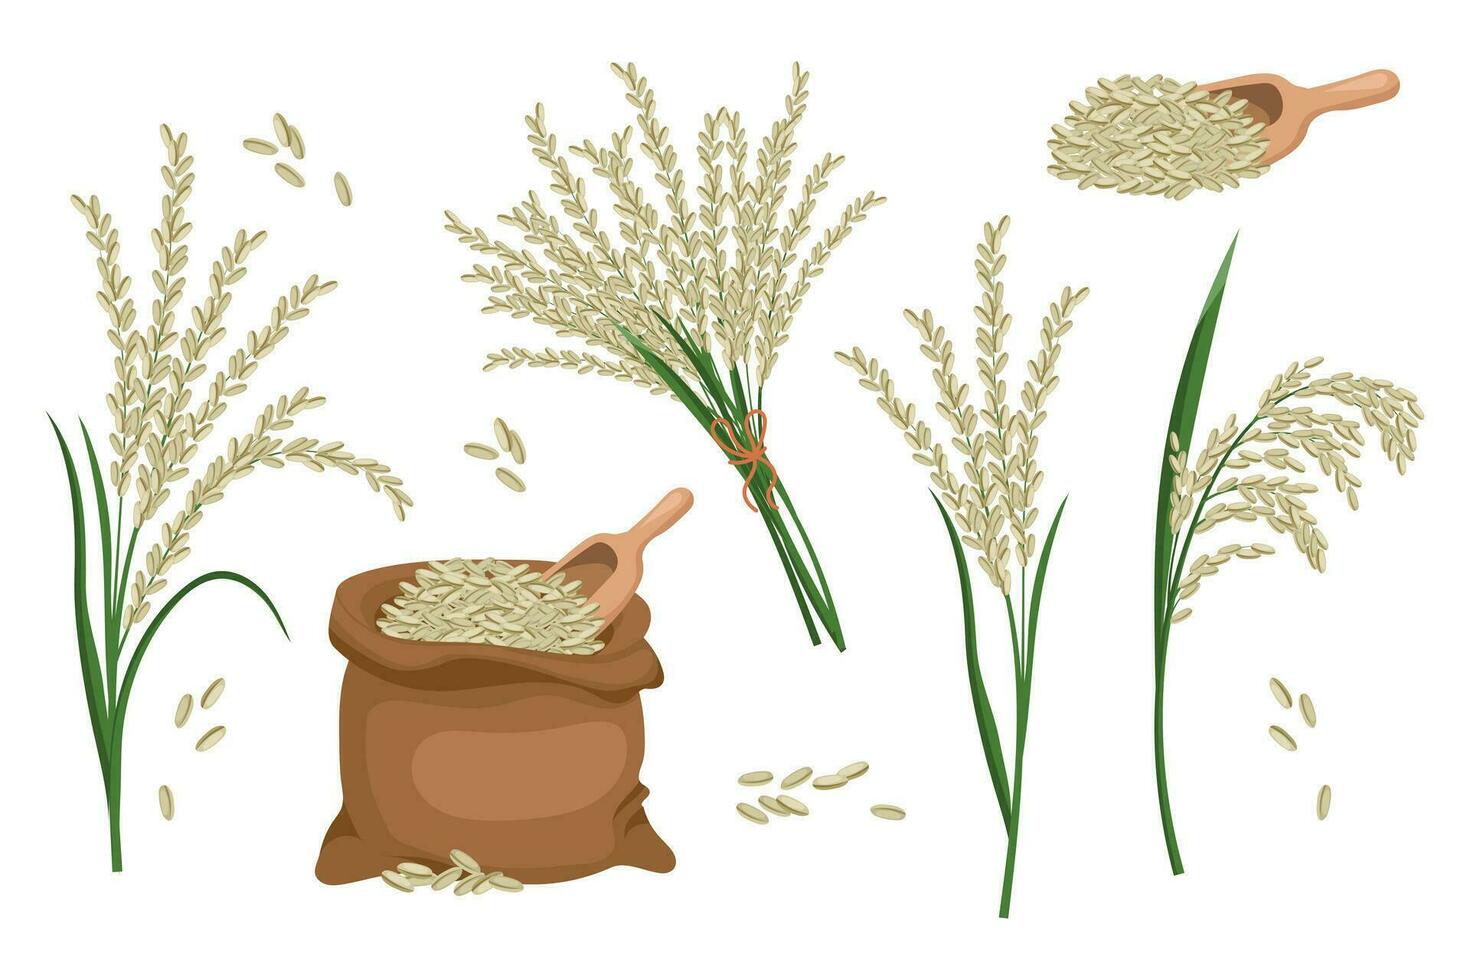 une ensemble de céréales et épillets de riz. riz usine, riz céréales dans une sac, riz bouquet. agriculture arrière-plan, conception éléments, vecteur